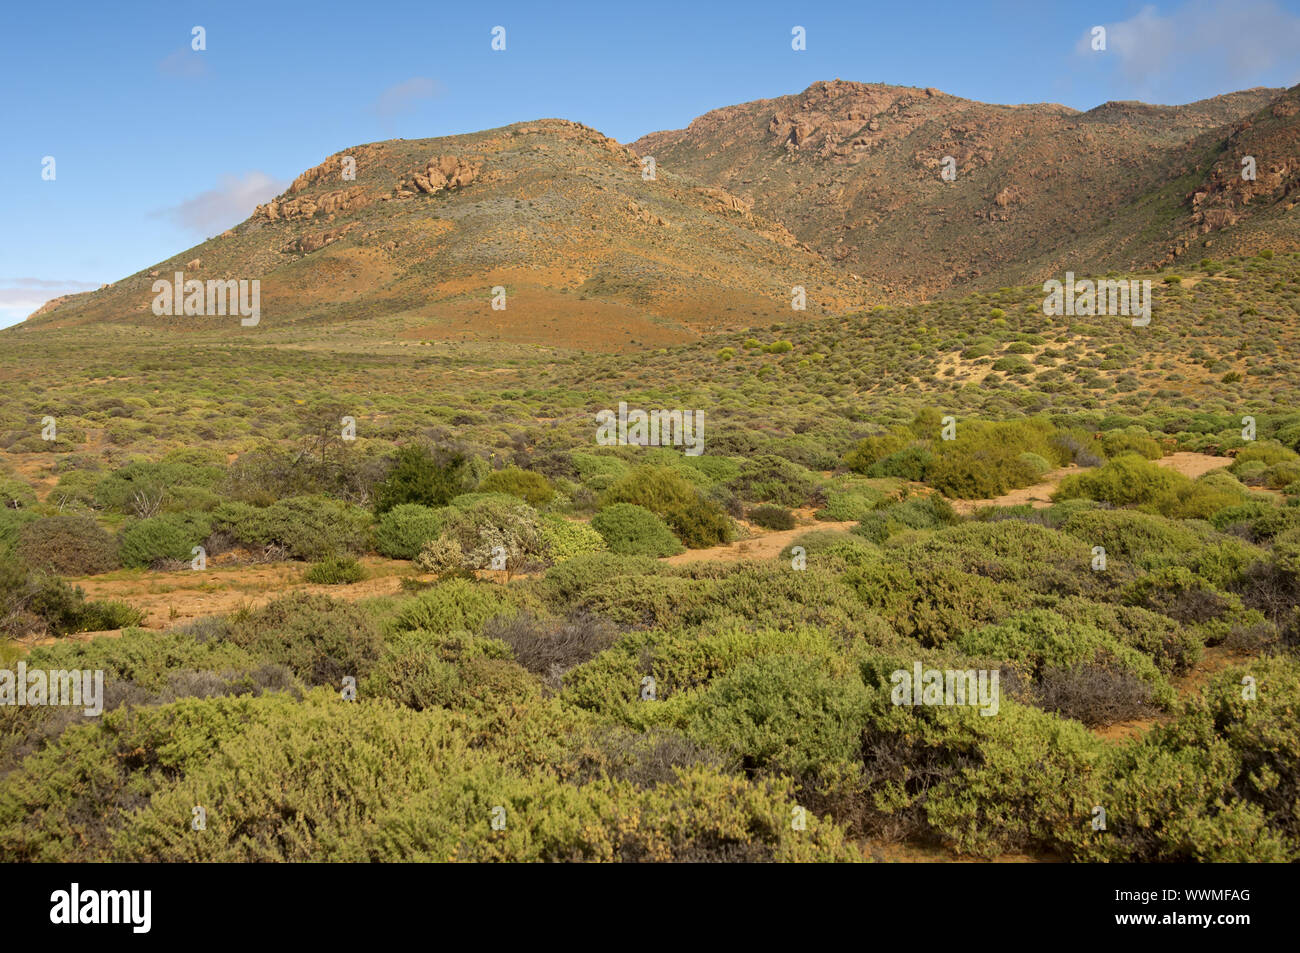 Nama Karoo Shrub savannah, Richtersveld, South Africa Stock Photo